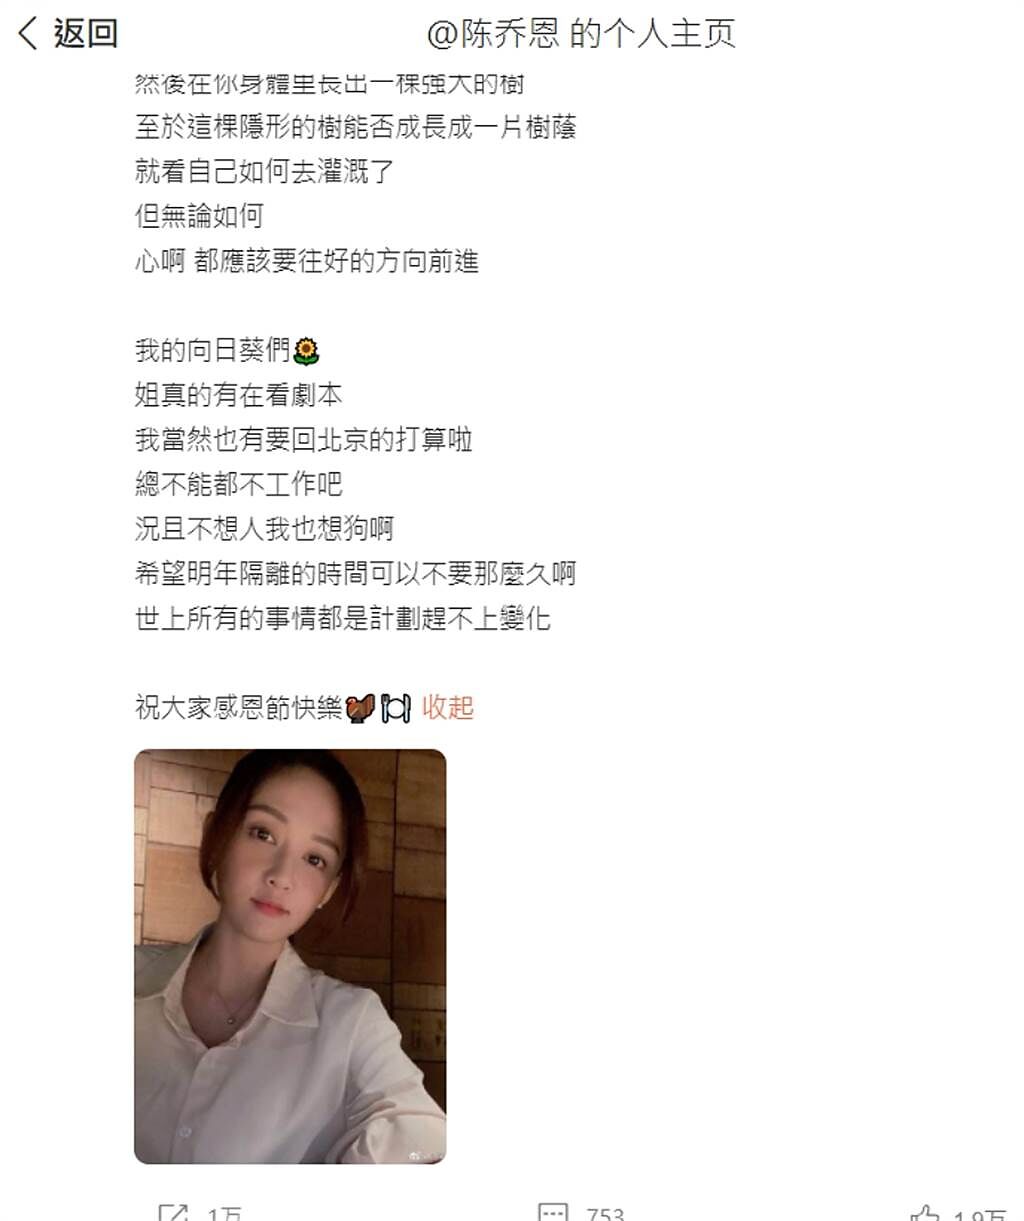 陳喬恩微博上提到「要回北京」但IG卻刪掉，引起網友熱烈討論。(圖/ 摘自陳喬恩微博)